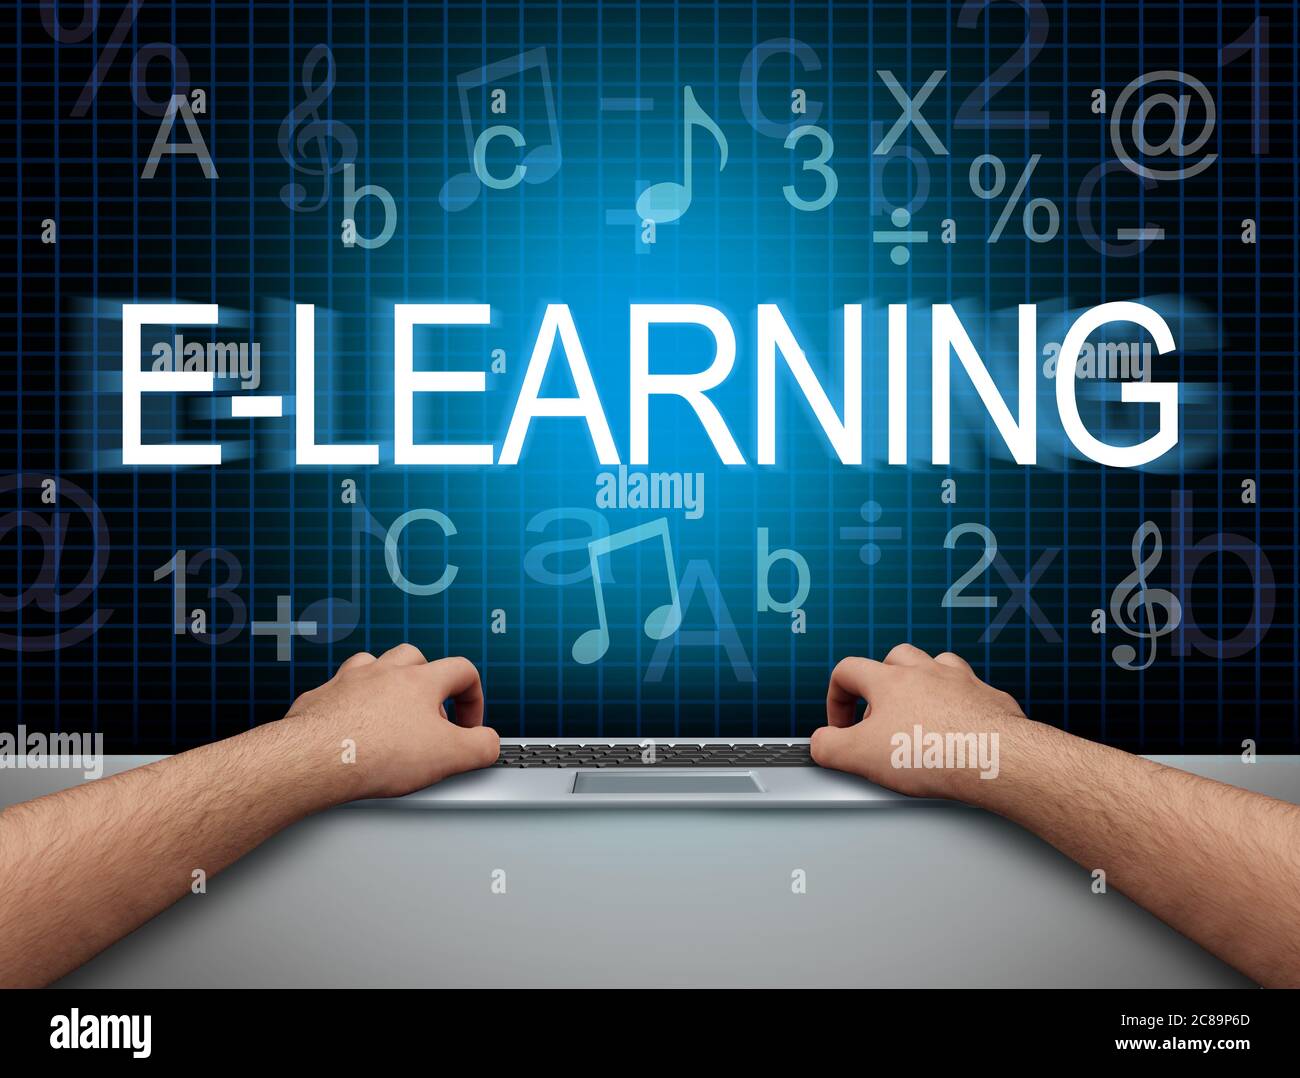 E-Learning- und Bildungstechnologie sowie virtuelle Klassenzimmer für Fernunterricht oder Online-Klassenraum-Konzept. Stockfoto